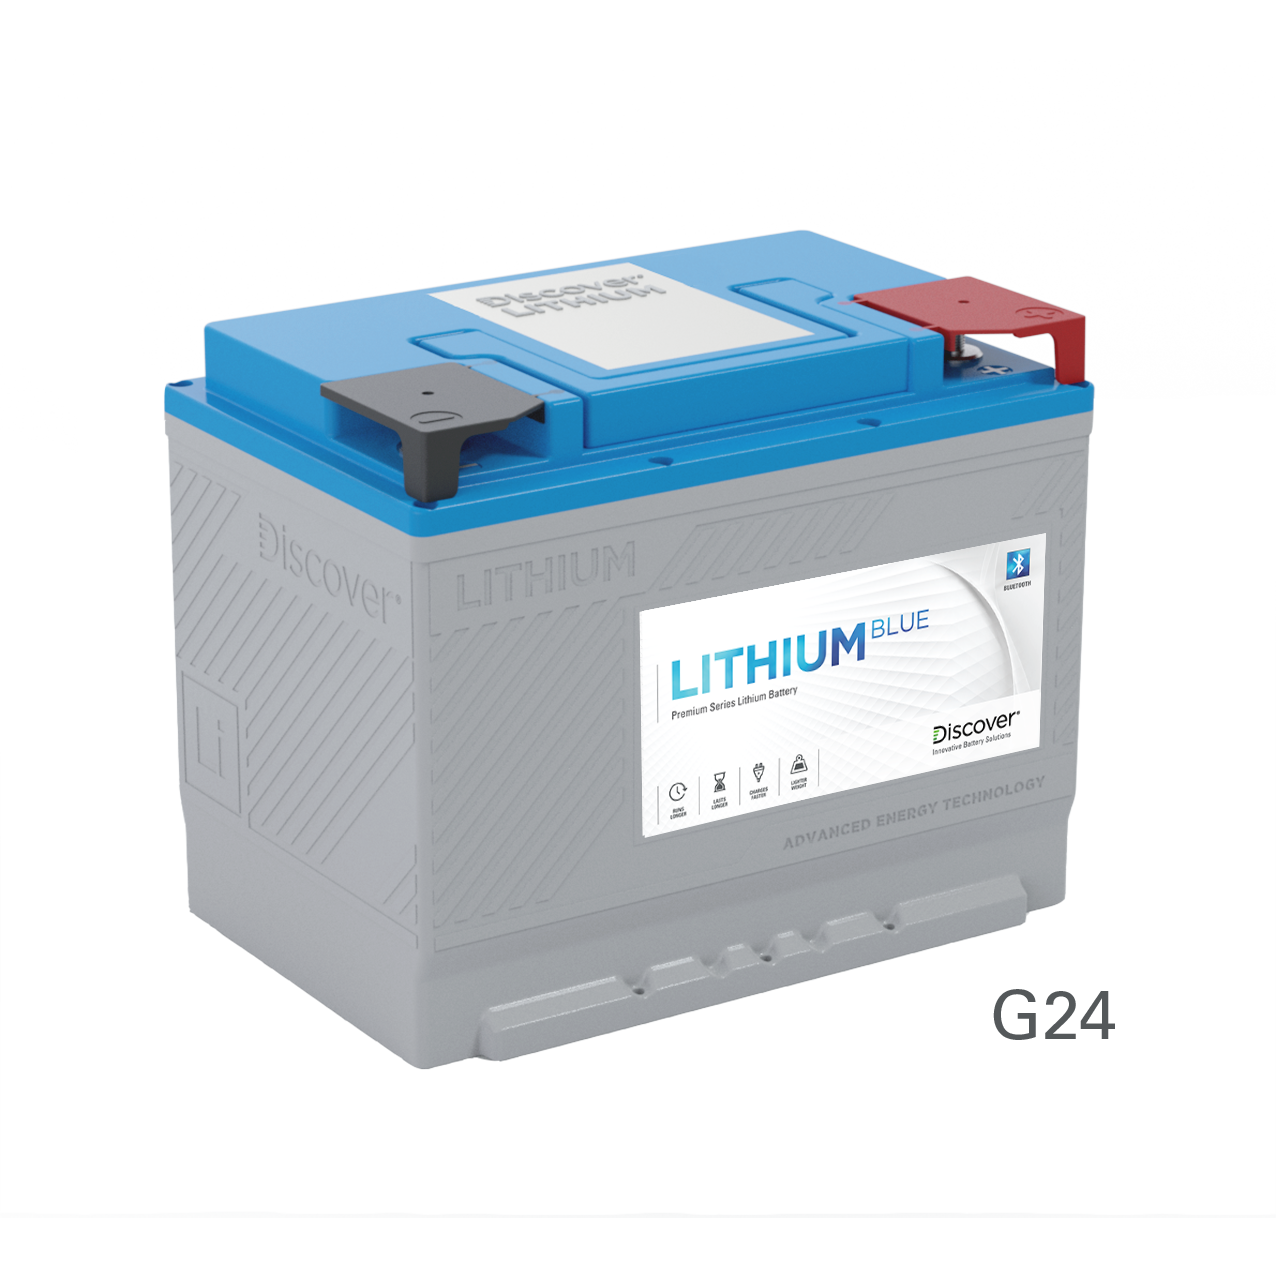 Discover Lihium Blue 12V 100Ah